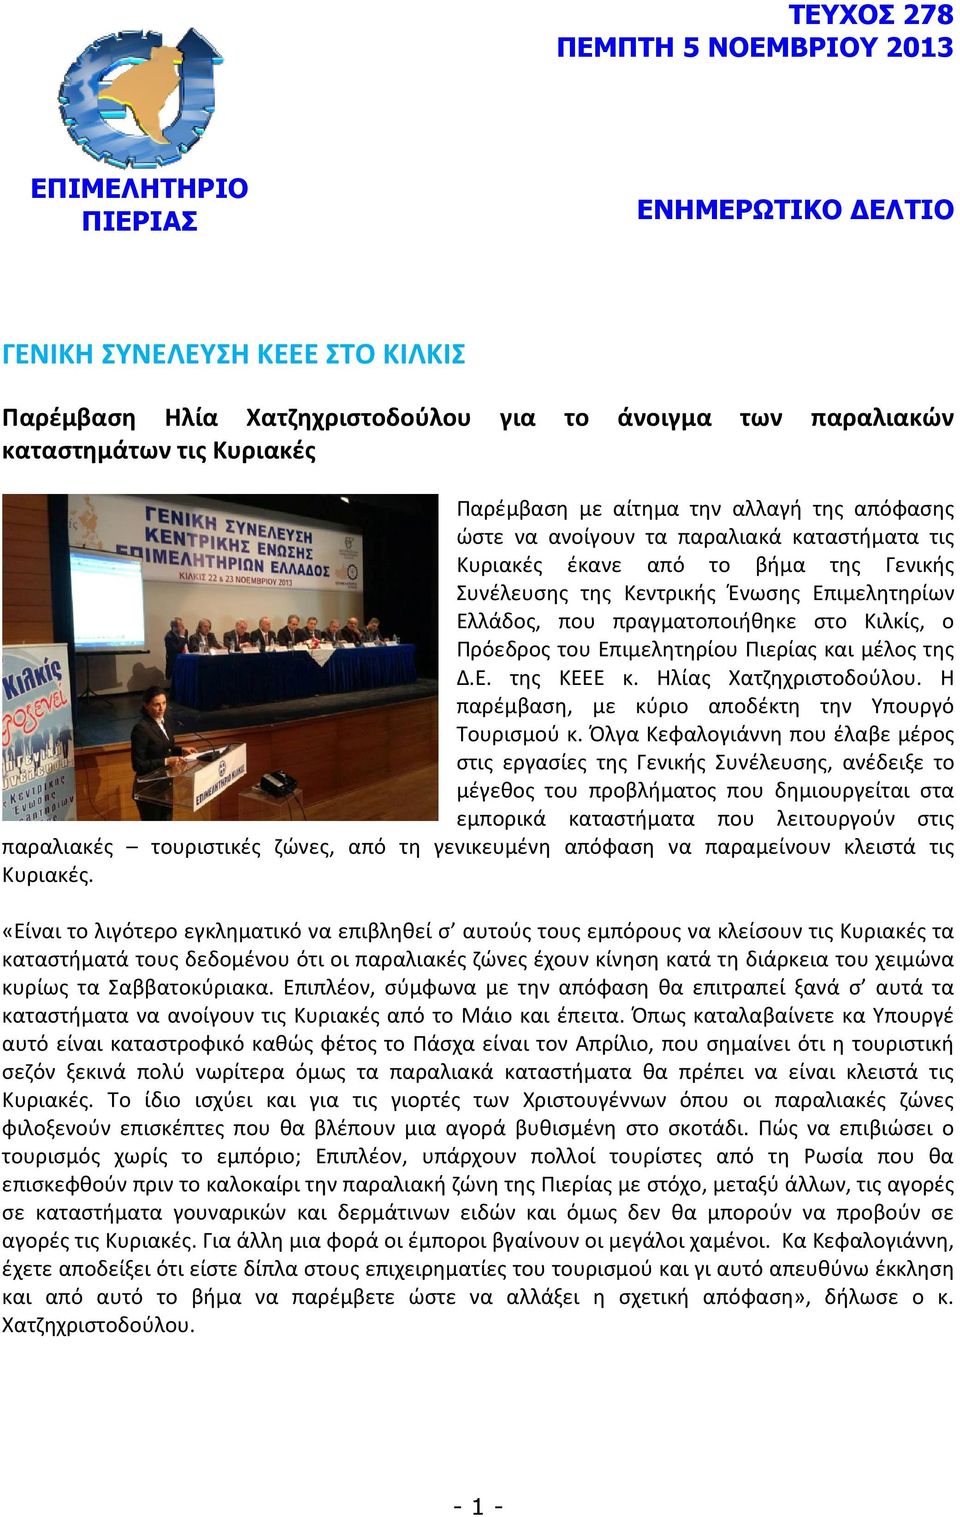 πραγματοποιήθηκε στο Κιλκίς, ο Πρόεδρος του Επιμελητηρίου Πιερίας και μέλος της Δ.Ε. της ΚΕΕΕ κ. Ηλίας Χατζηχριστοδούλου. Η παρέμβαση, με κύριο αποδέκτη την Υπουργό Τουρισμού κ.